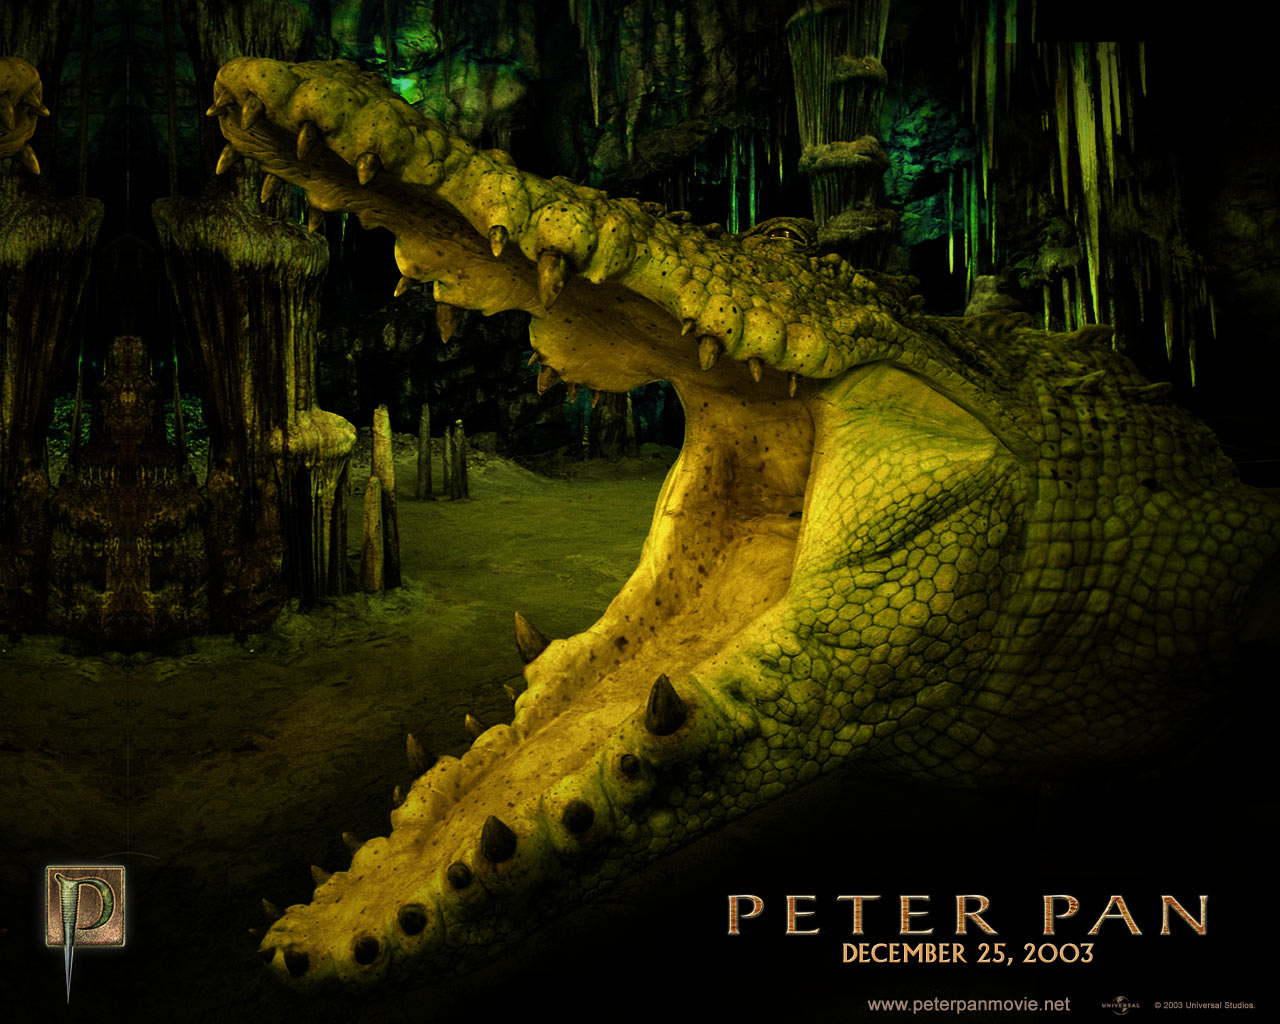 Full Movie: Watch Full movie Peter Pan 2003 Online Free